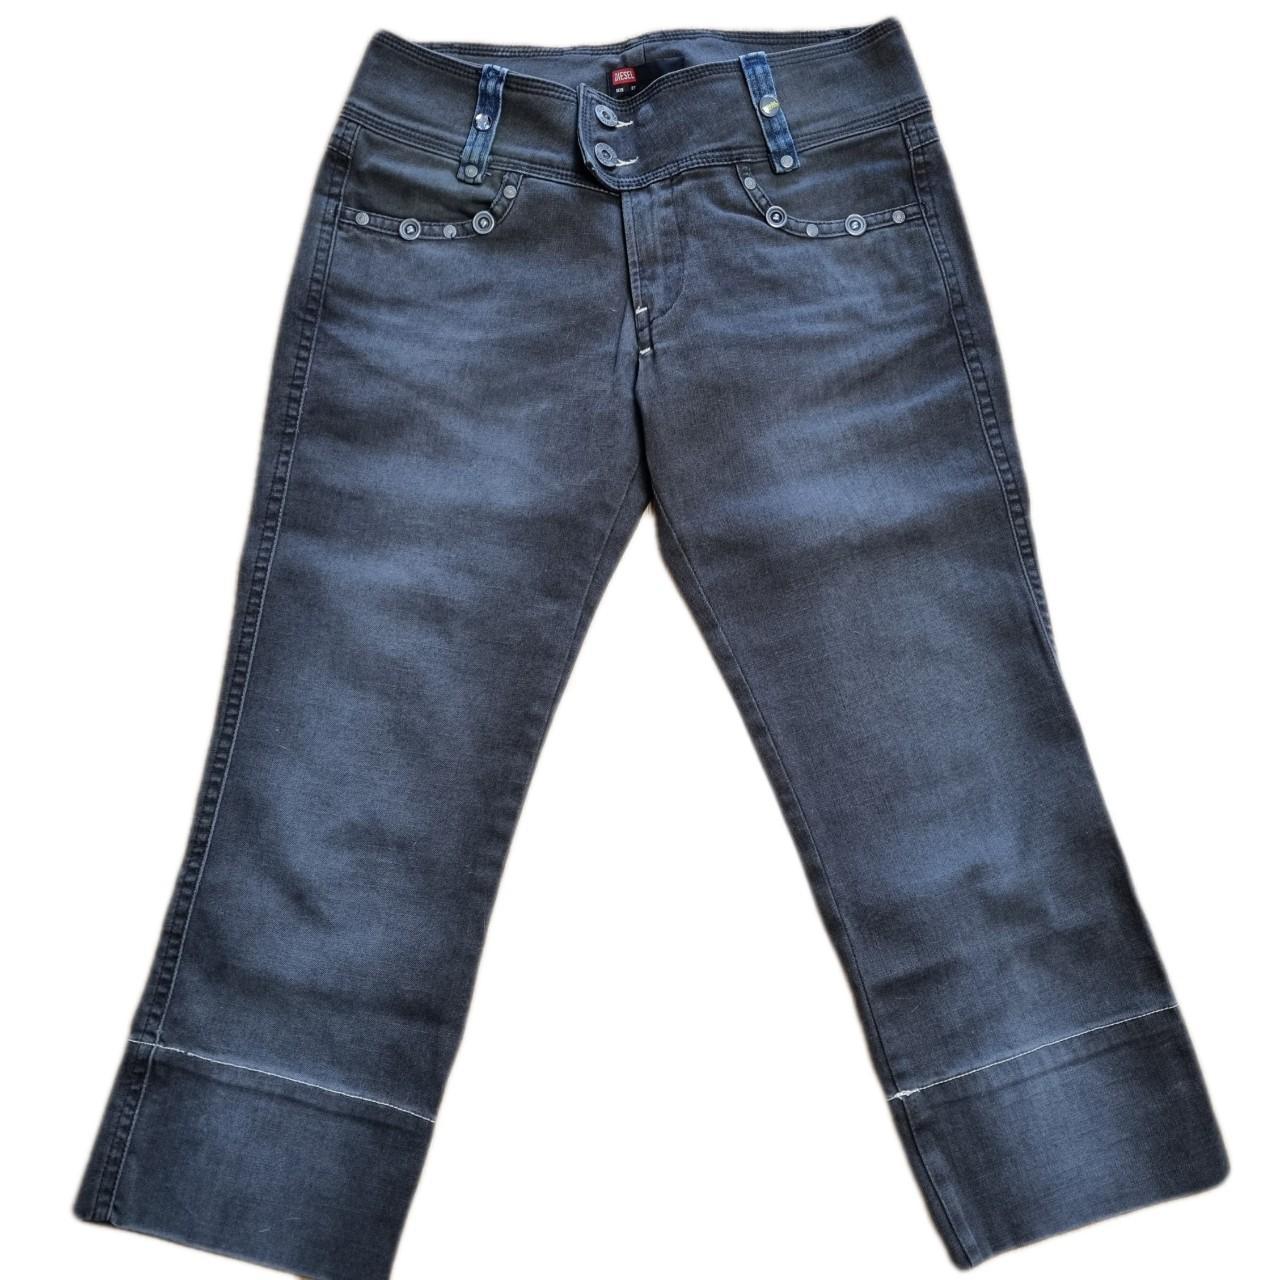 cute y2k Diesel low rise capri jeans with details in... - Depop